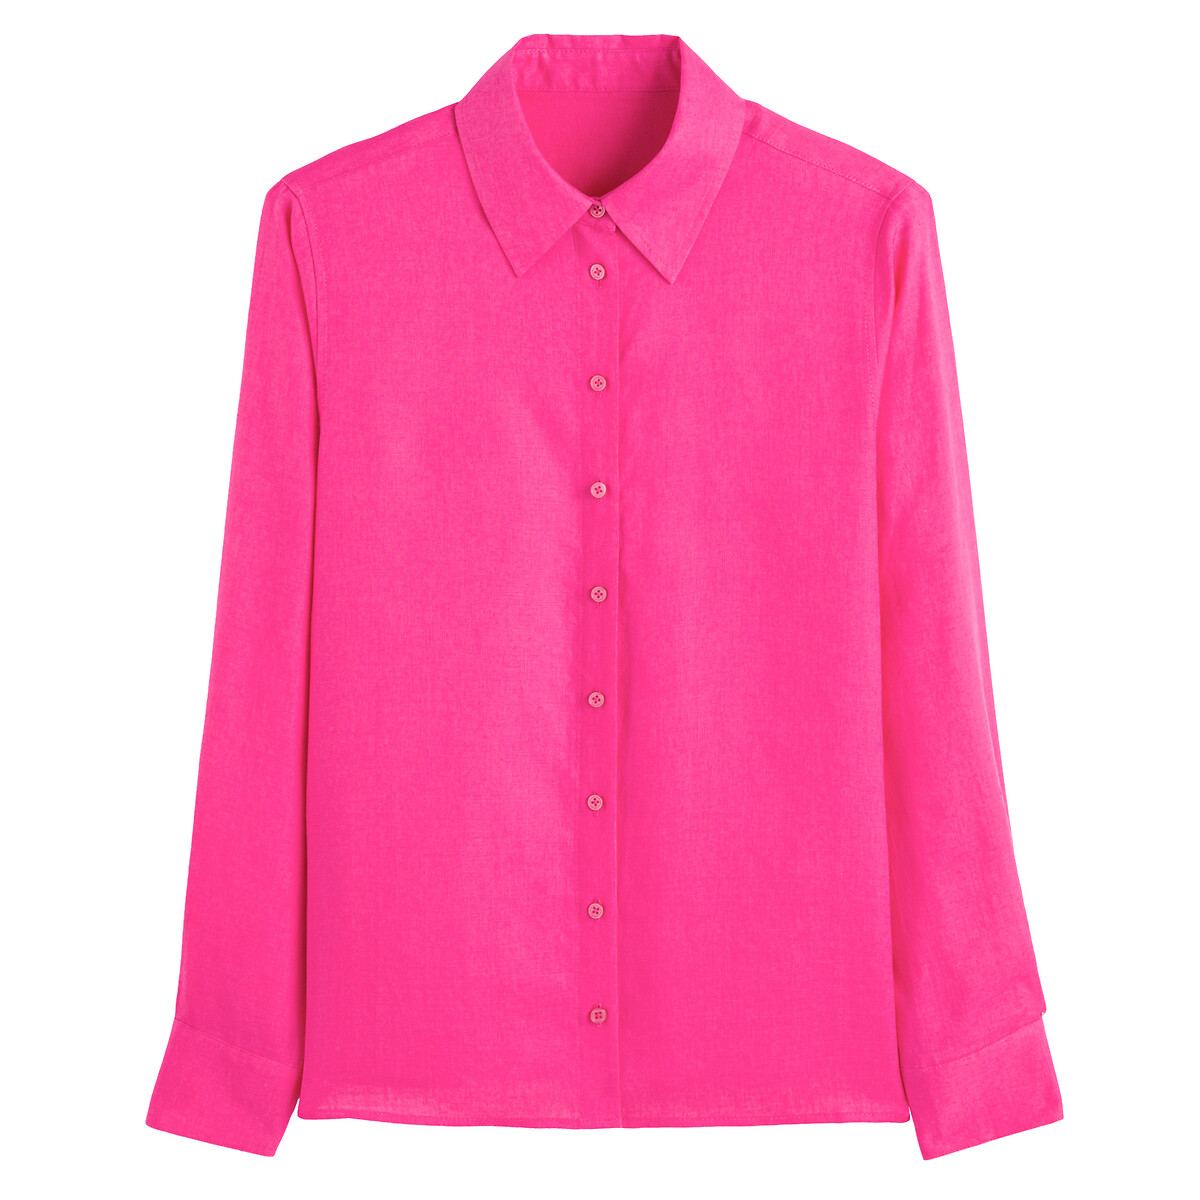 Рубашка Из льна с длинными рукавами 38 (FR) - 44 (RUS) розовый LaRedoute, размер 38 (FR) - 44 (RUS) Рубашка Из льна с длинными рукавами 38 (FR) - 44 (RUS) розовый - фото 5